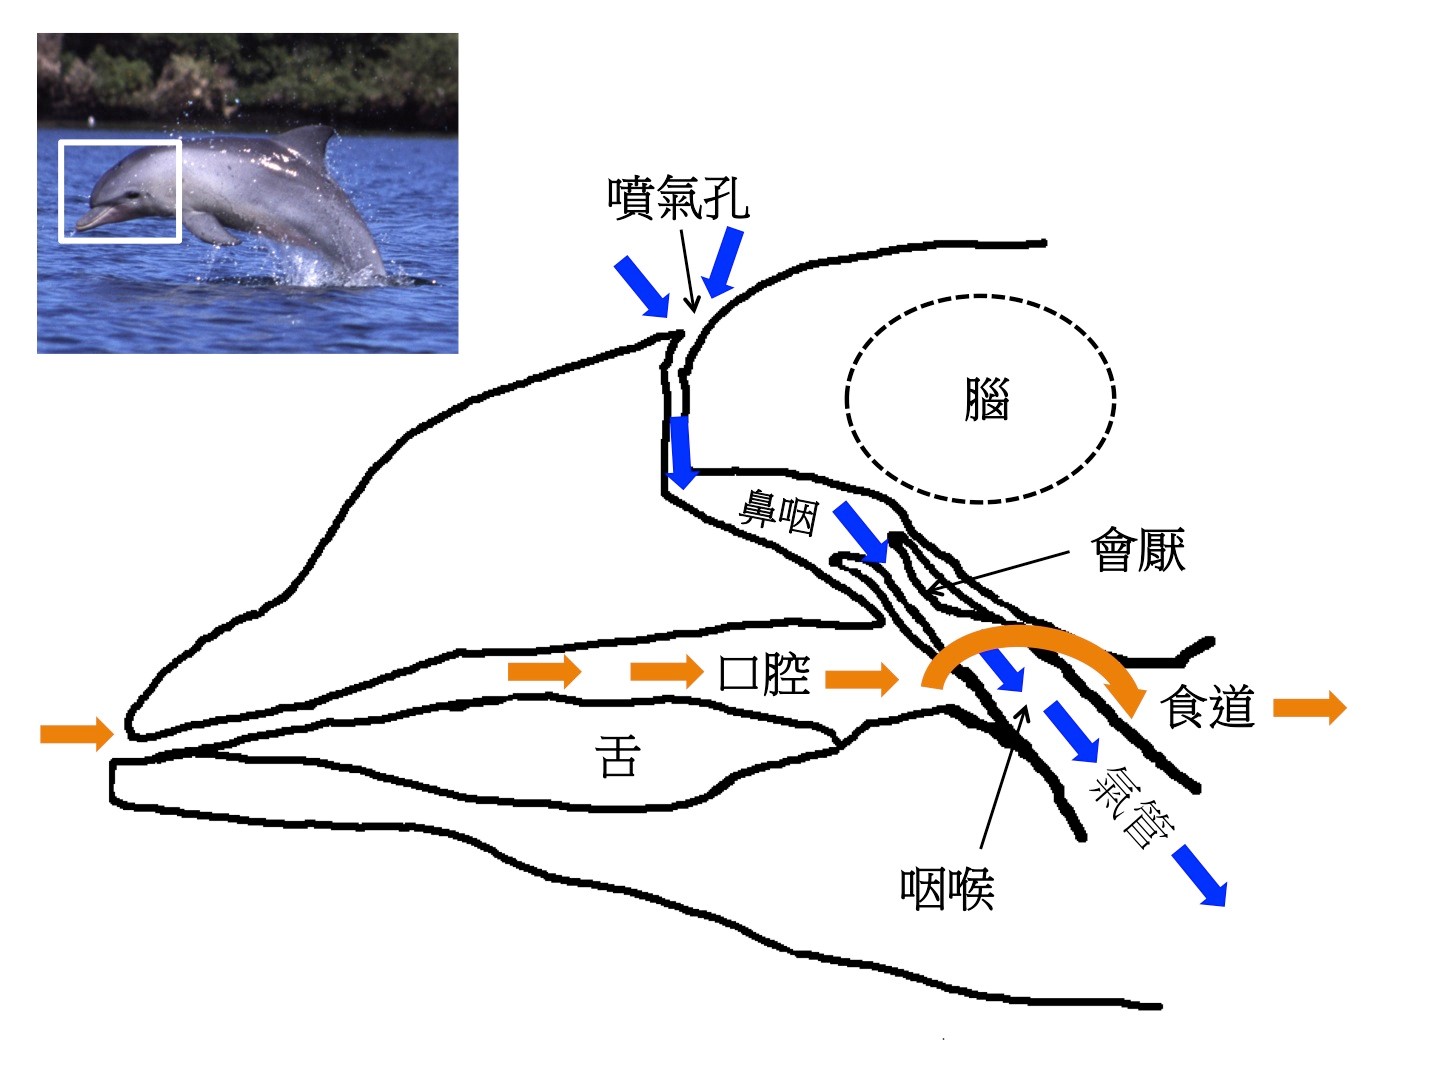 圖二：鯨豚頭部解剖卡通解說圖。橘色箭頭表示食物進入腸胃道的路徑，藍色箭頭表示空氣進入肺部的路徑。圖片來源：筆者自繪，參考Dawson et al. (2016) Figure 3，左上方海豚圖取自維基百科。 